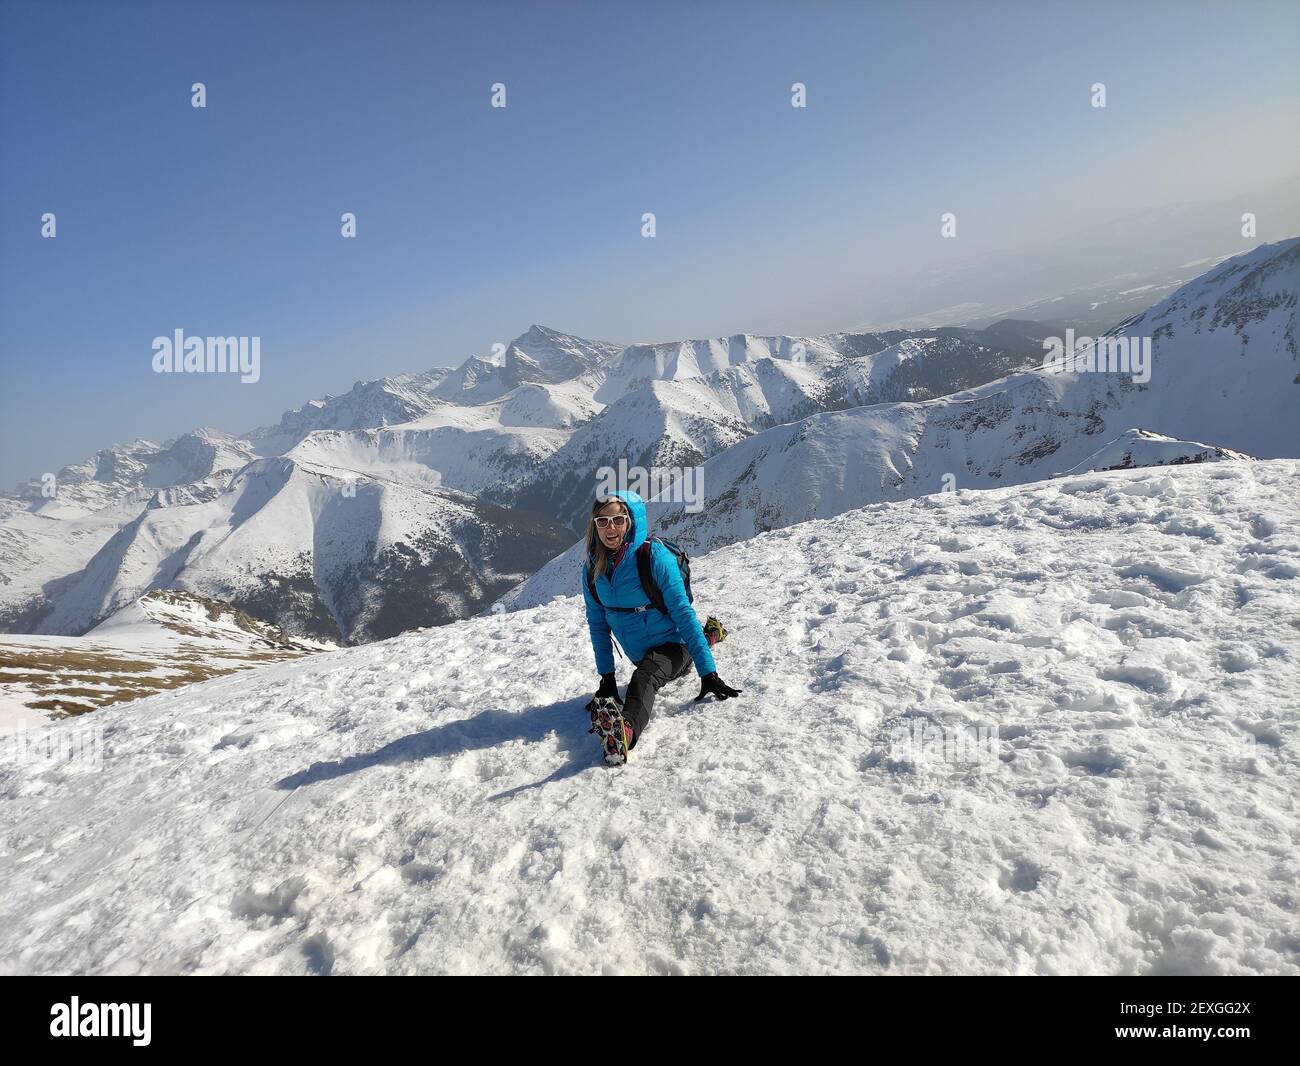 Eine Touristin in einer blauen Jacke macht Splits auf dem Gipfel des Berges. Stockfoto